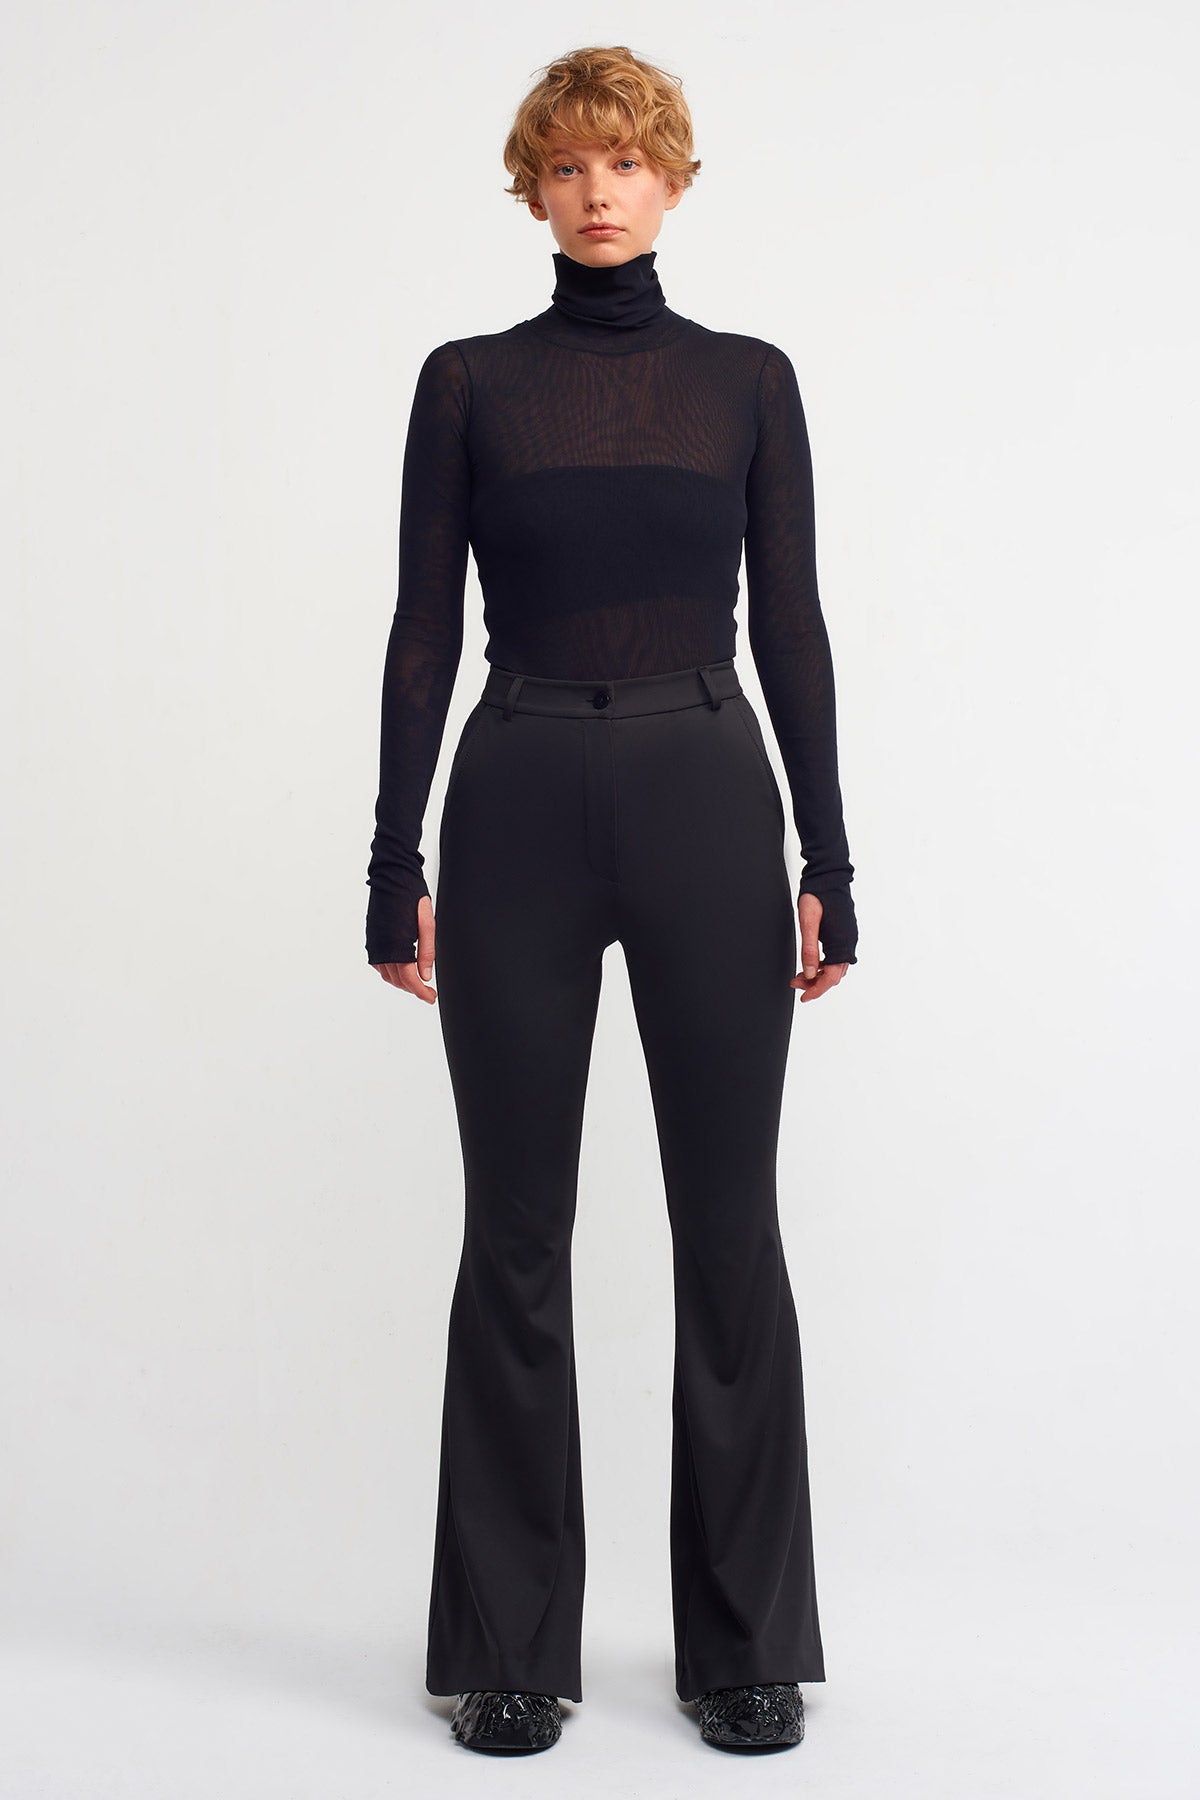 Black Neoprene Fabric, Spanish Trousers-K233013016